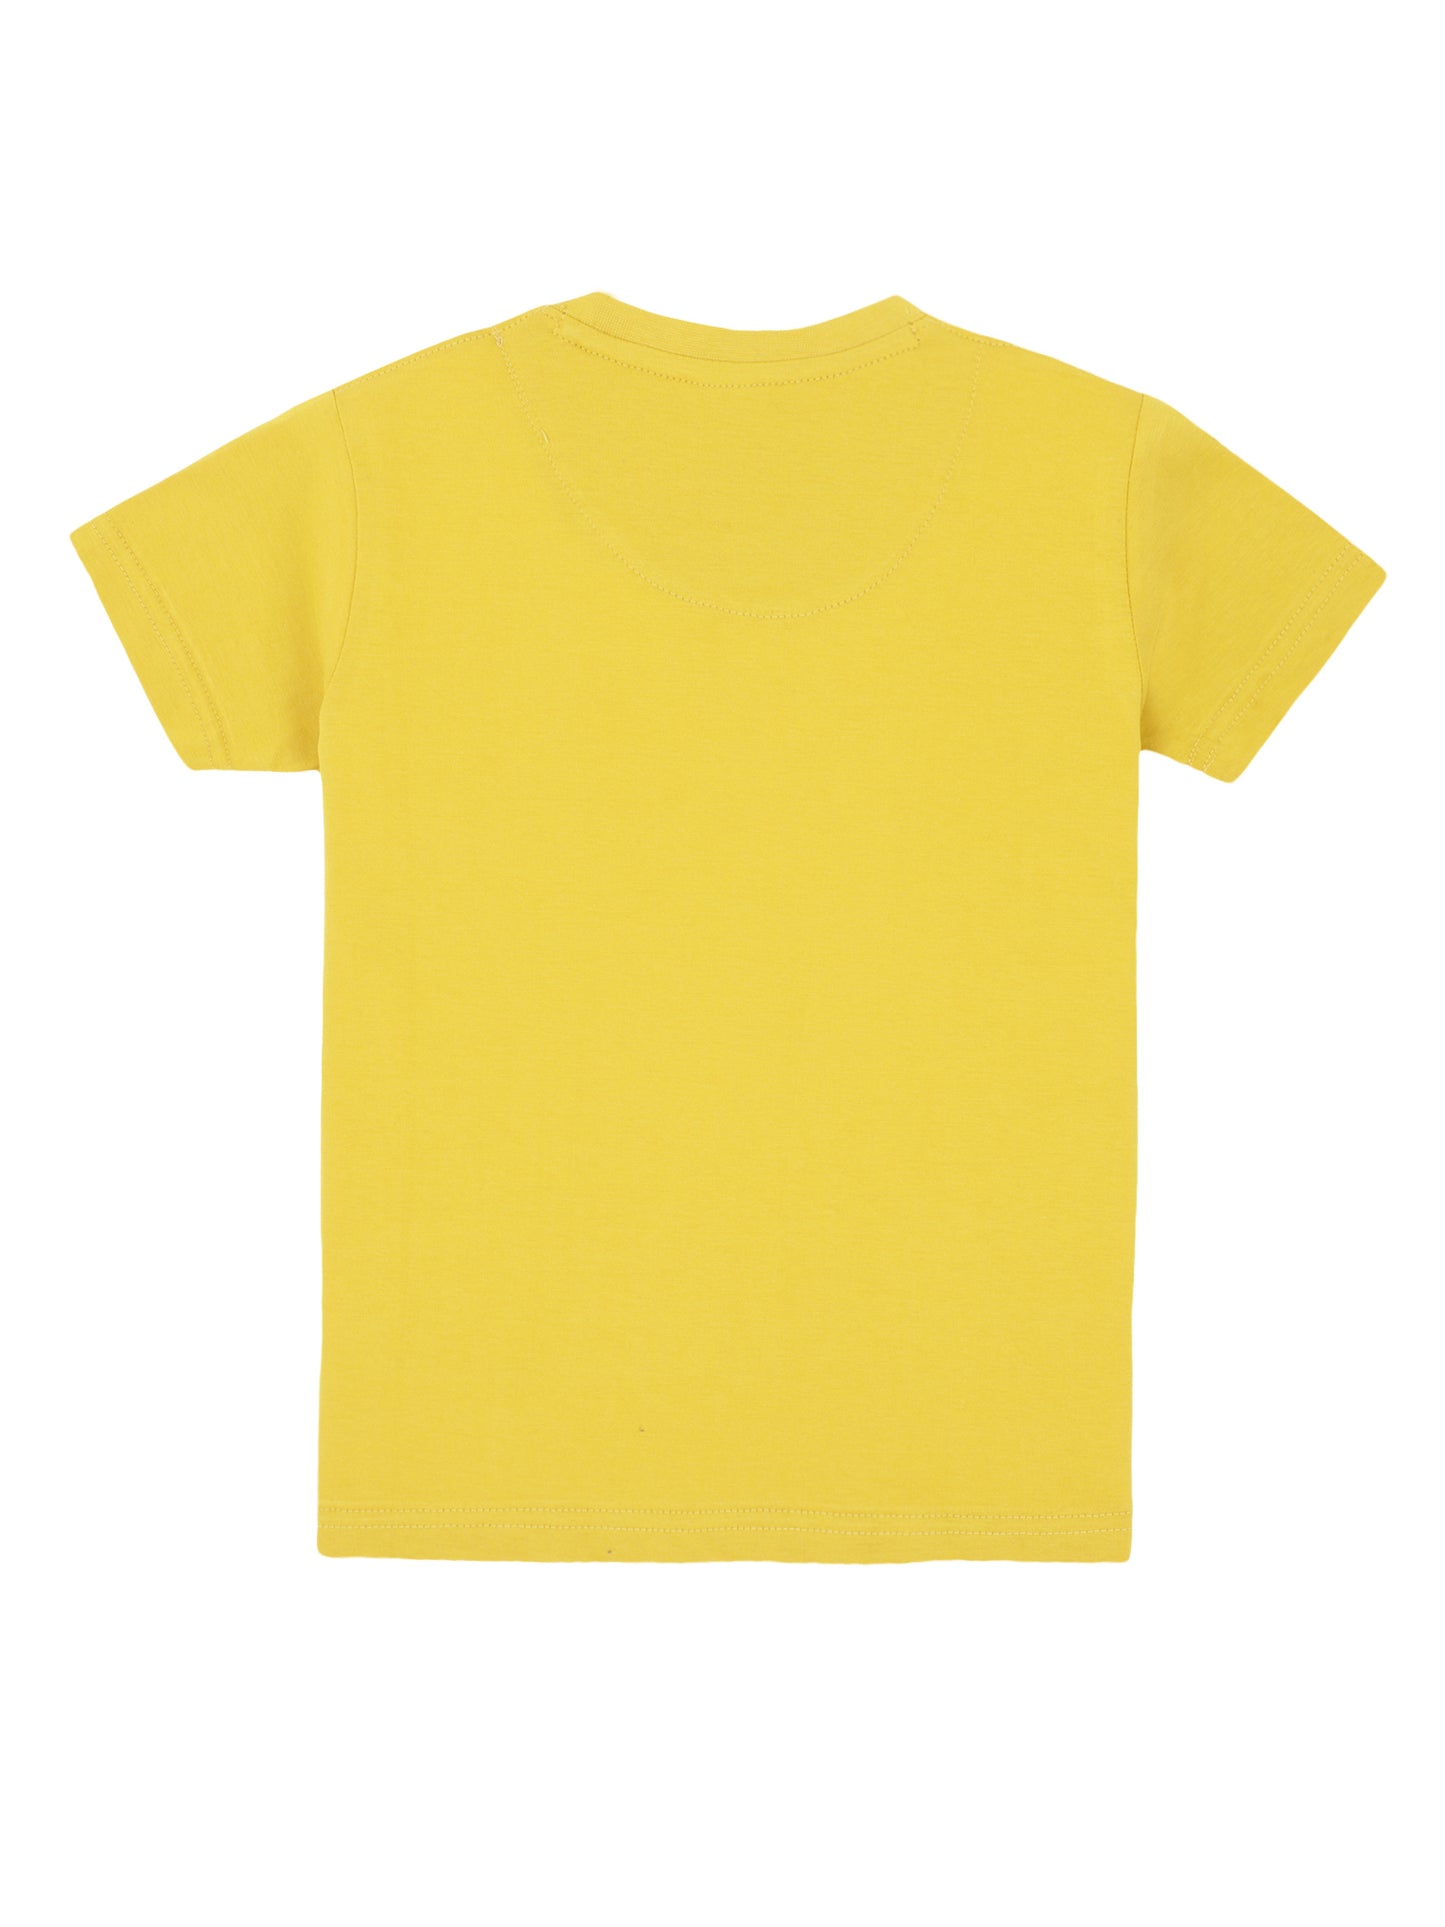 Kids Printed round neck Yellow t-shirt